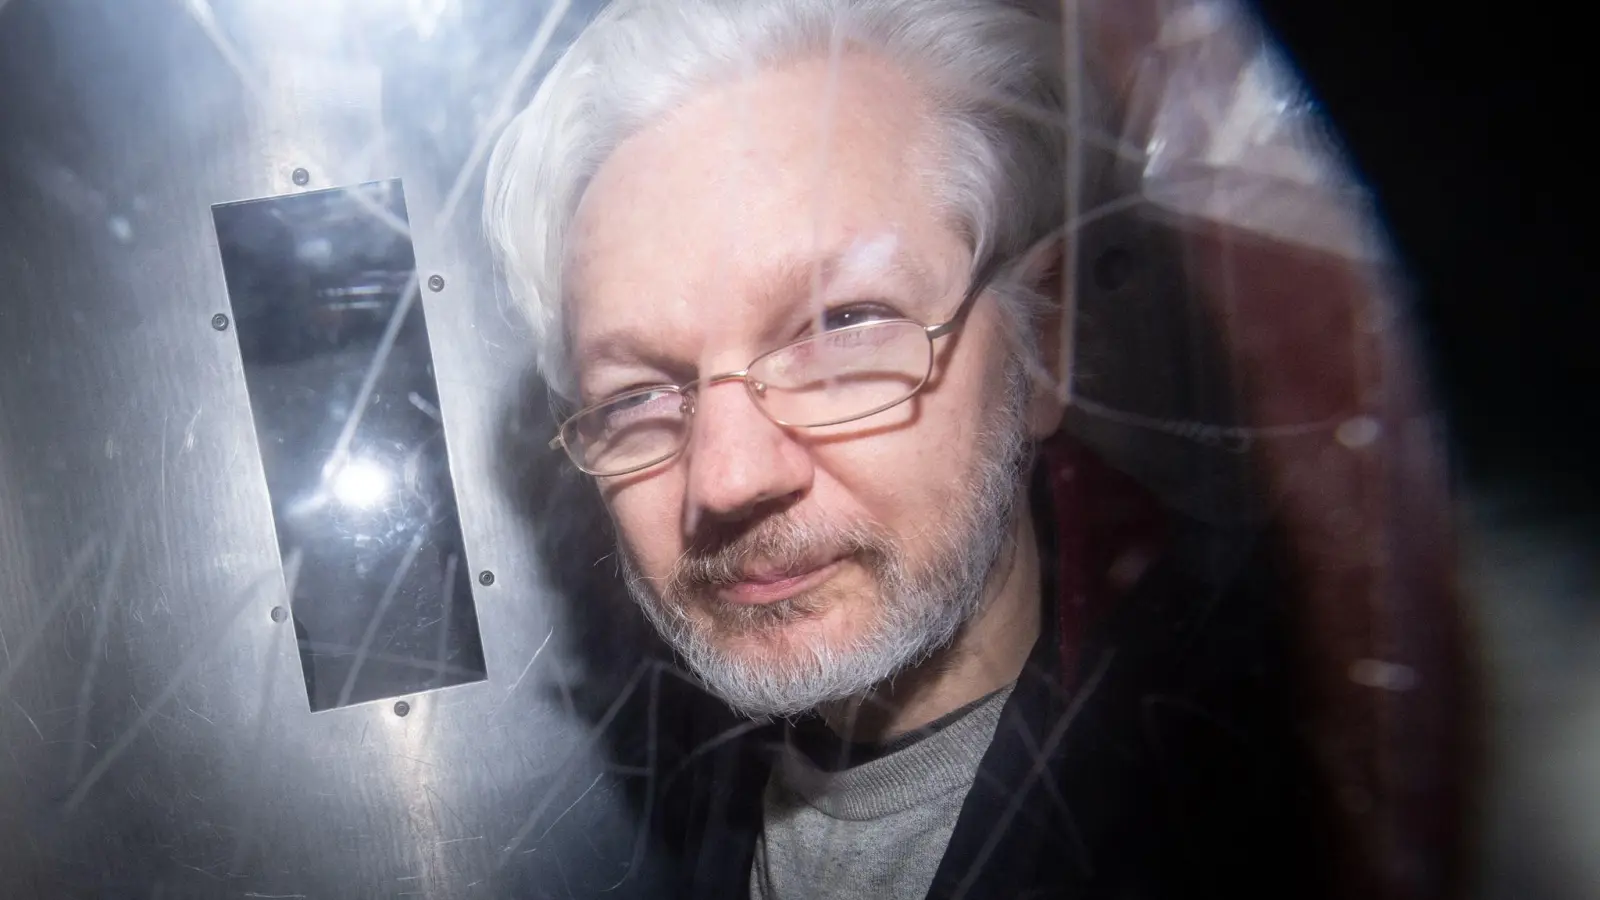 Sitzt seit seiner Festnahme im April 2019 im Londoner Hochsicherheitsgefängnis Belmarsh: Julian Assange. (Foto: Dominic Lipinski/PA/dpa)